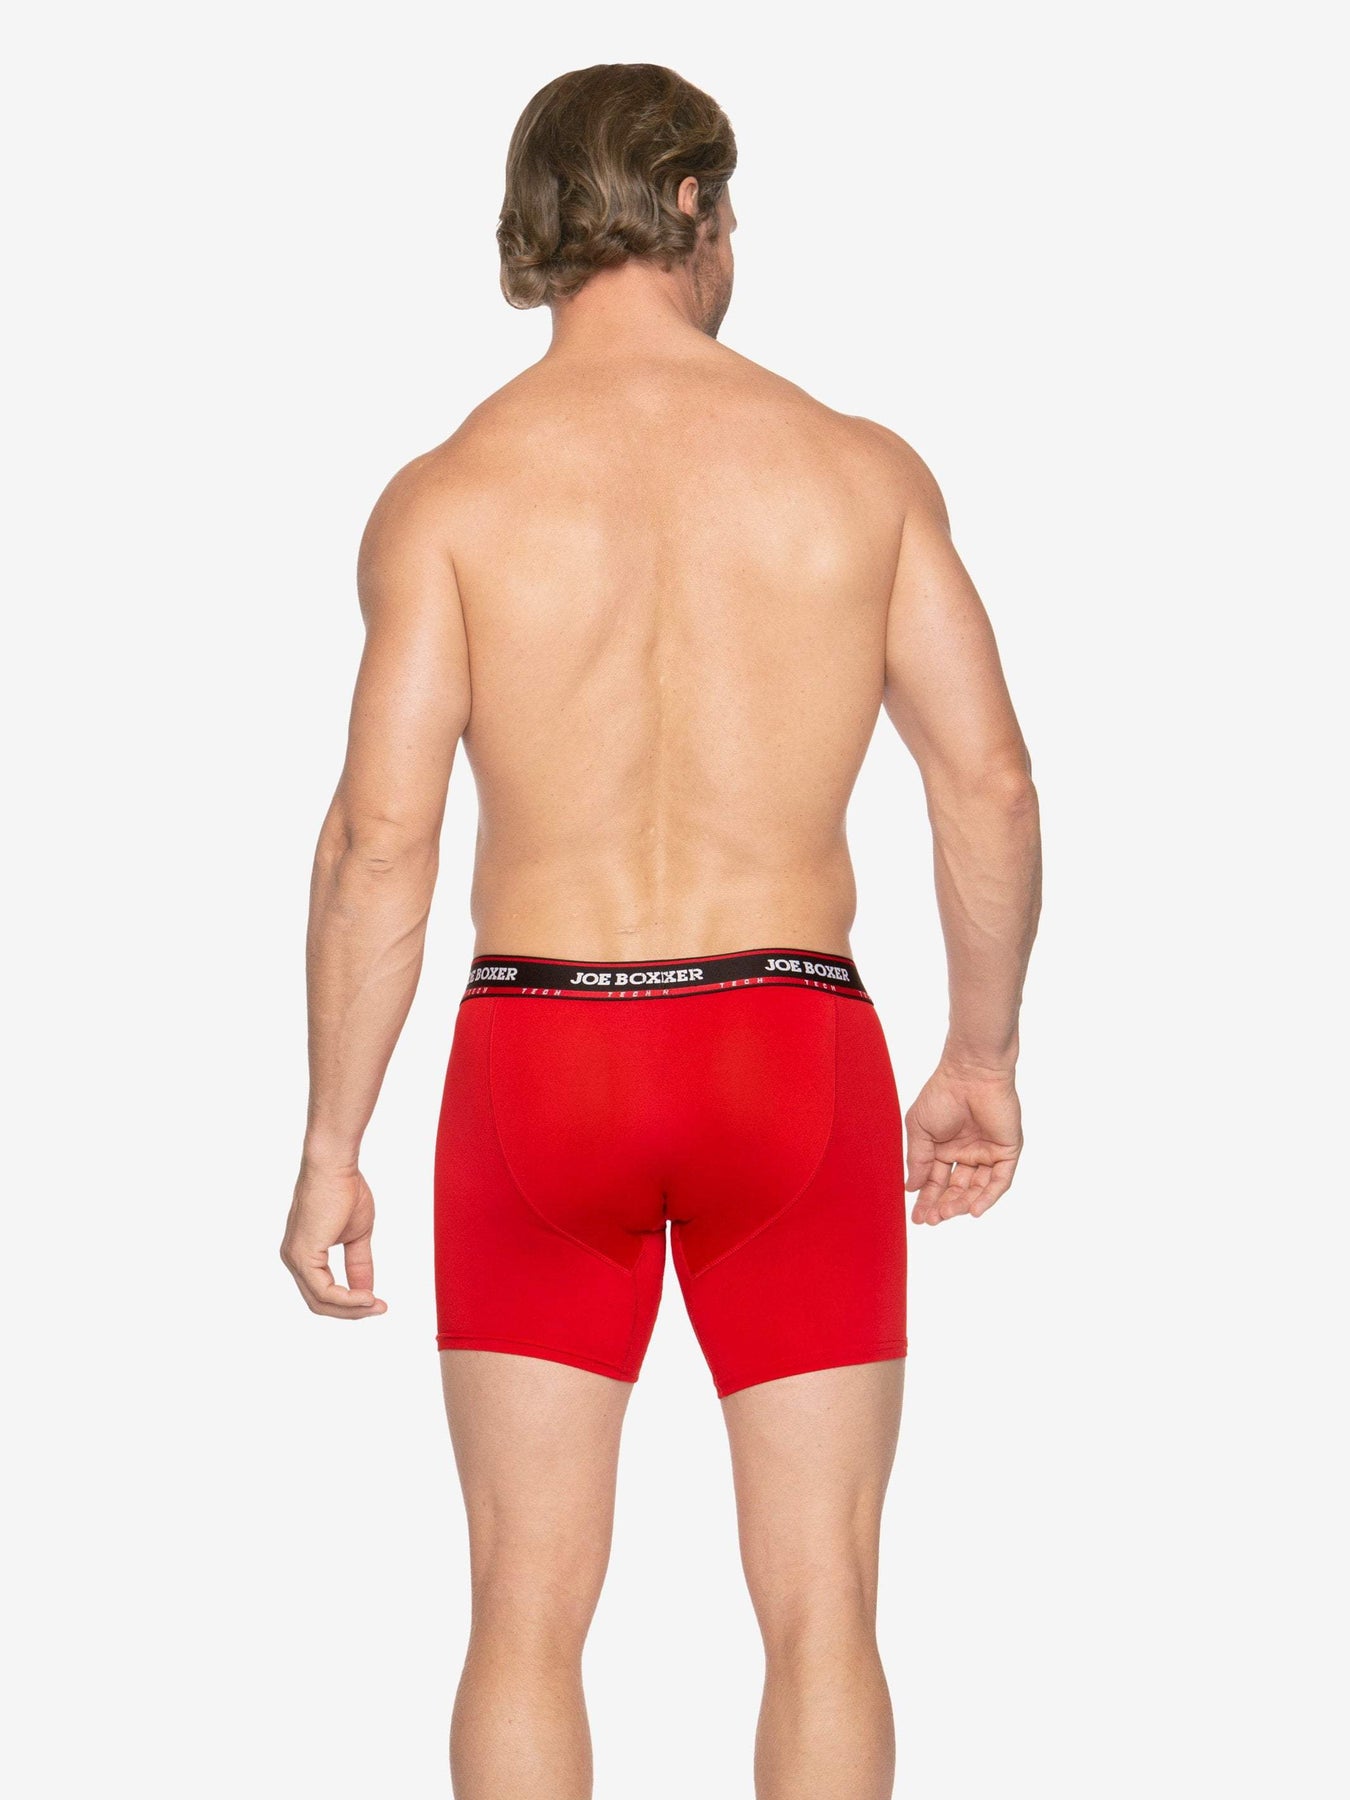 jovati Mens Briefs Underwear Mens Underpants Cotton Sweat Absorbing  Breathable Sports Underwear Briefs